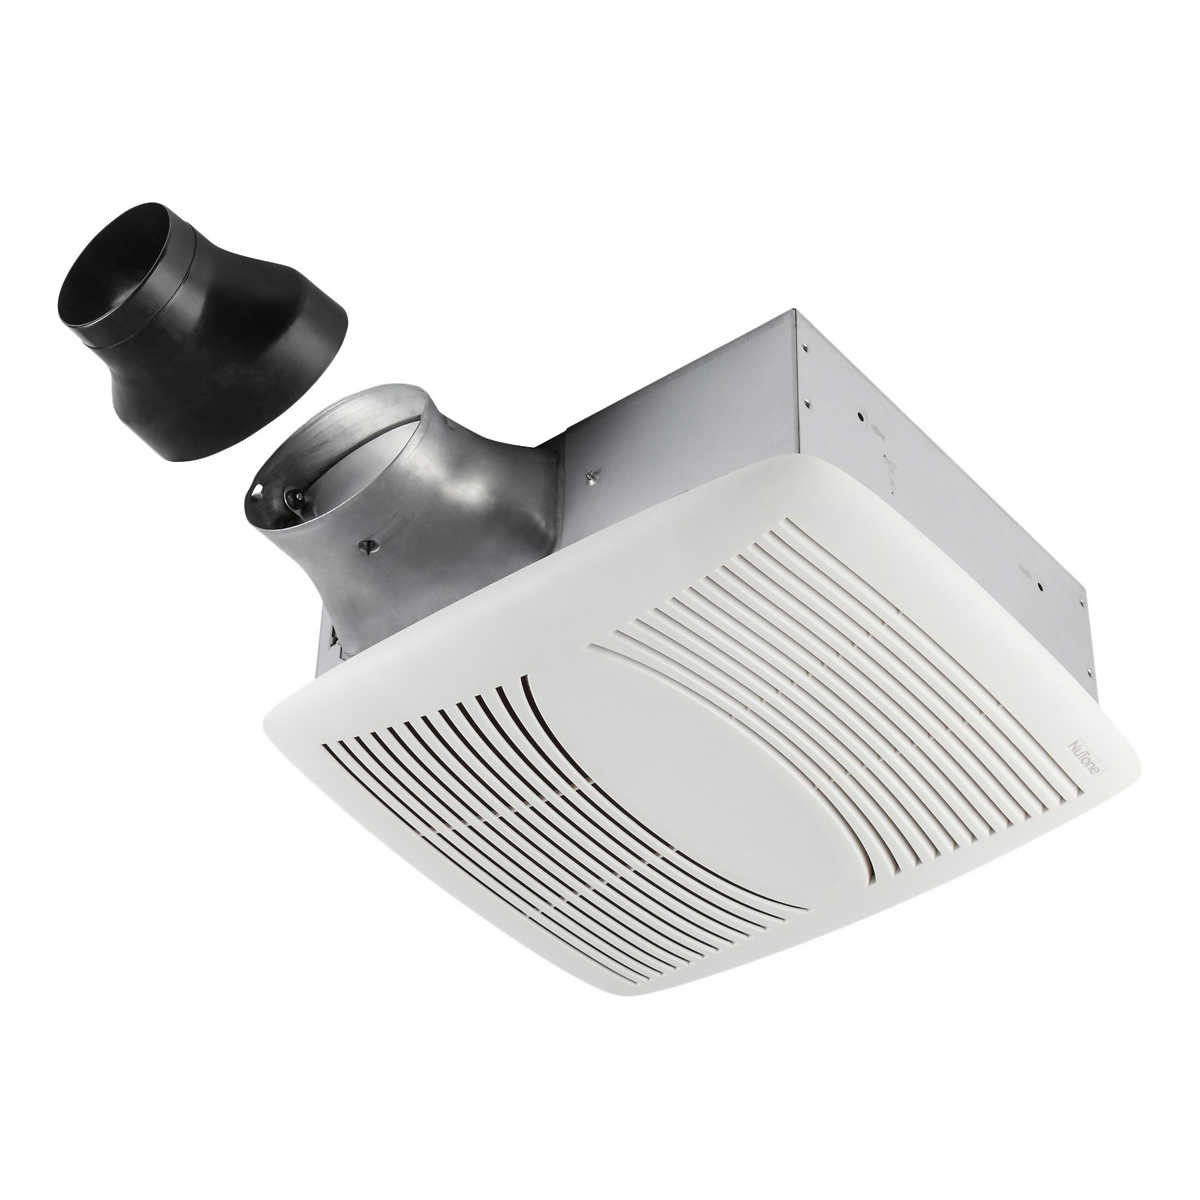 Nutone Ezfit 80 Cfm Fan And Broan, Costco Bathroom Fan With Light